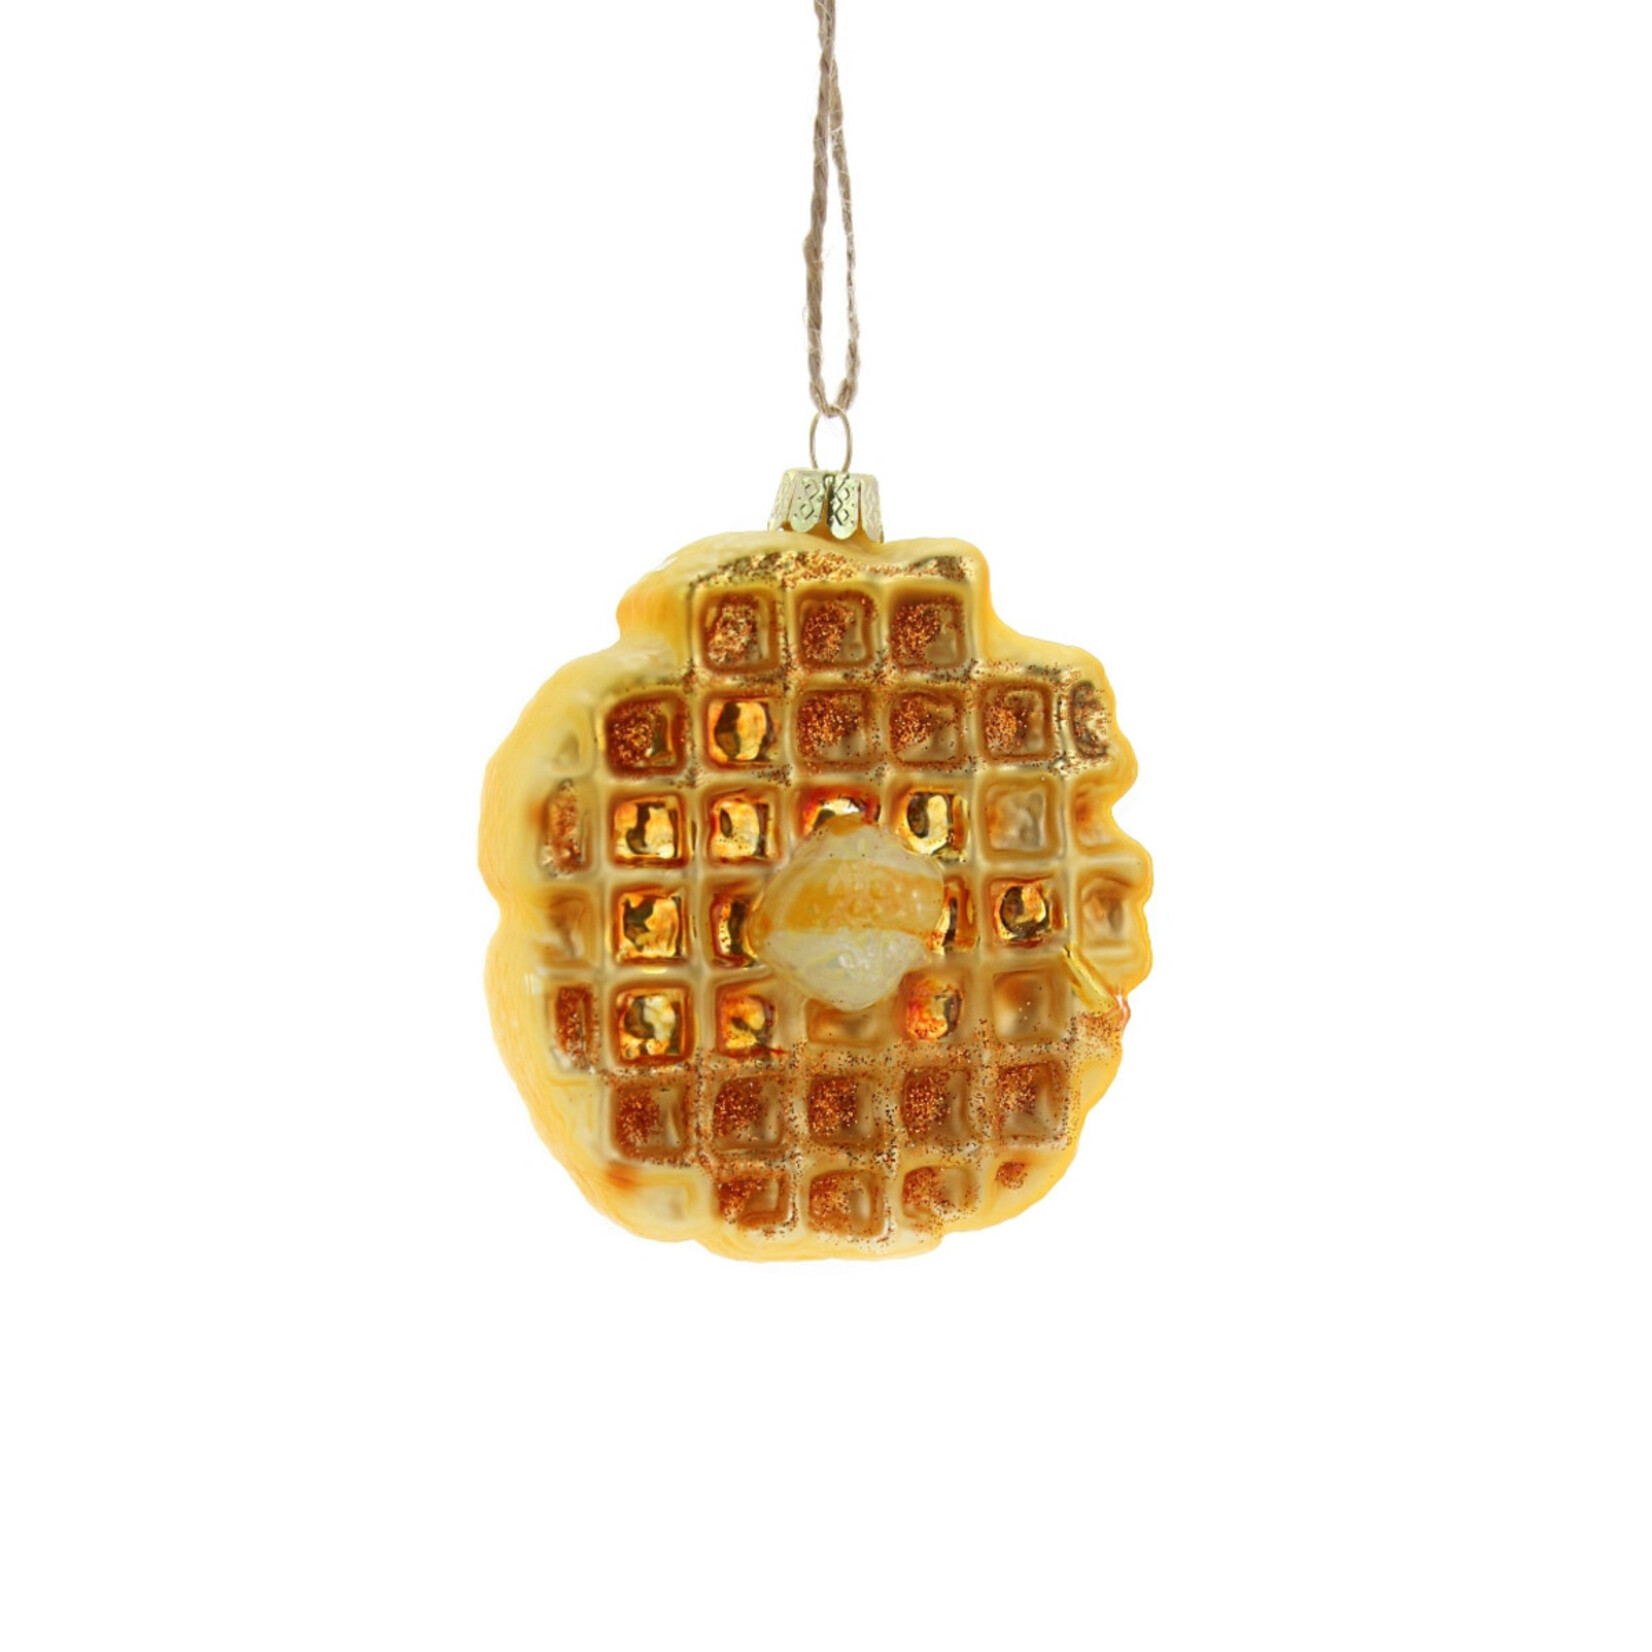 Cody Foster Eggo Waffle Ornament